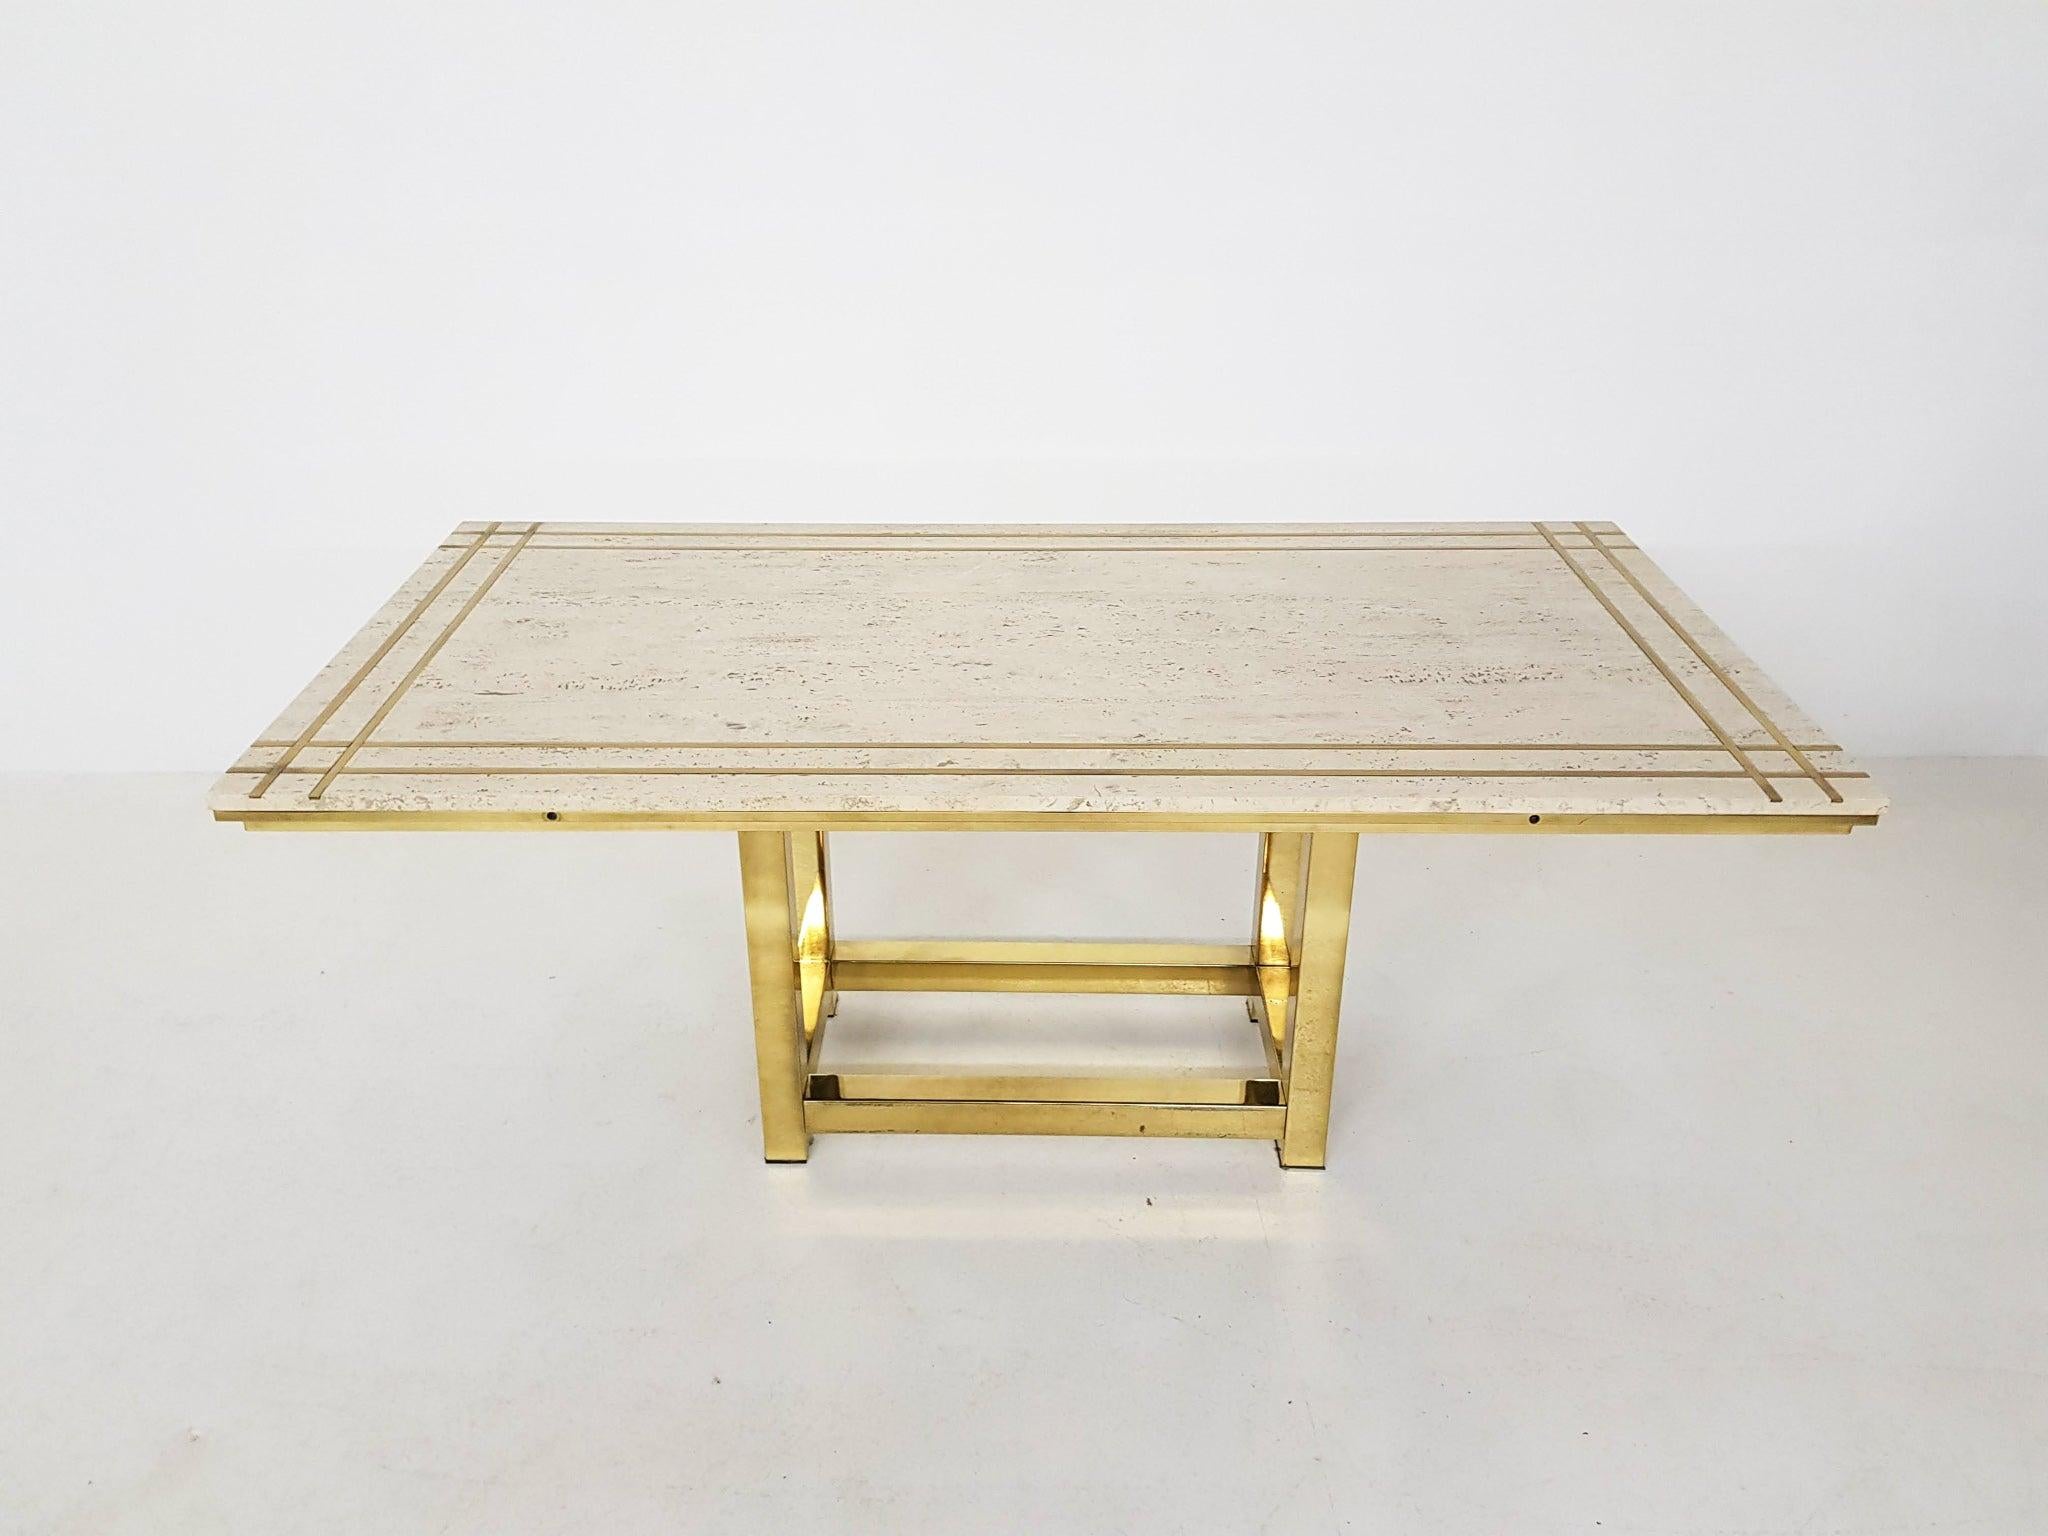 Hochwertiger Esstisch aus Travertin, Messing und vergoldetem Metall von Alain Delon.

Ein beeindruckender Esstisch aus schönstem Travertin mit einer kreuzförmigen Messingintarsie. Der Tisch ruht auf einem vergoldeten Metallsockel. Er bietet Platz